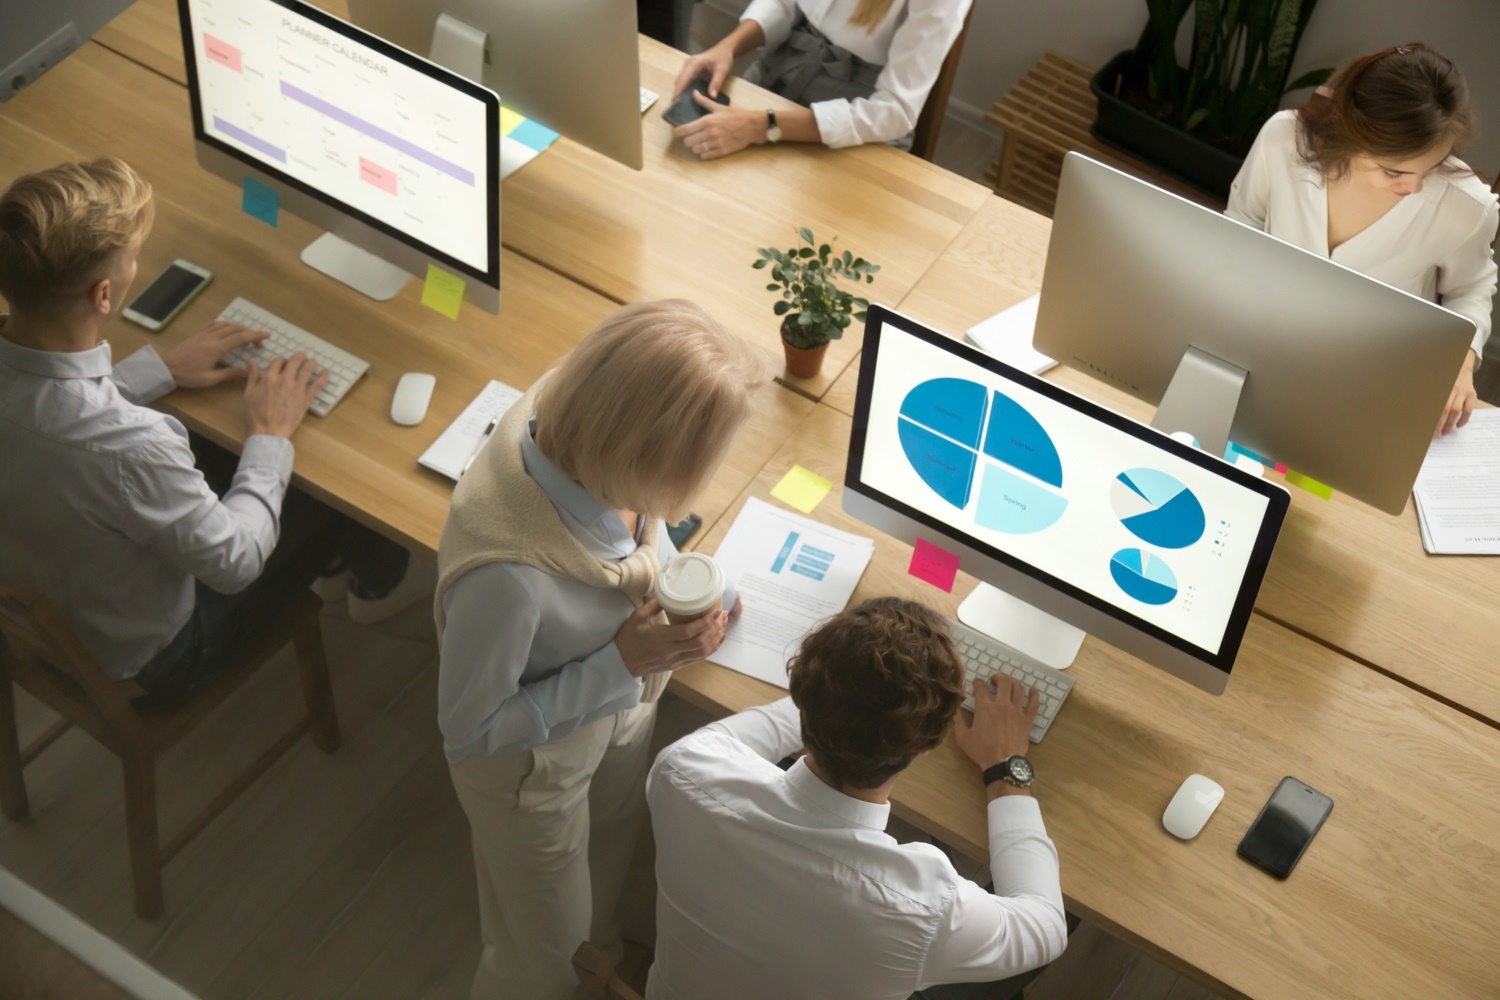 monitor employee desktop usage